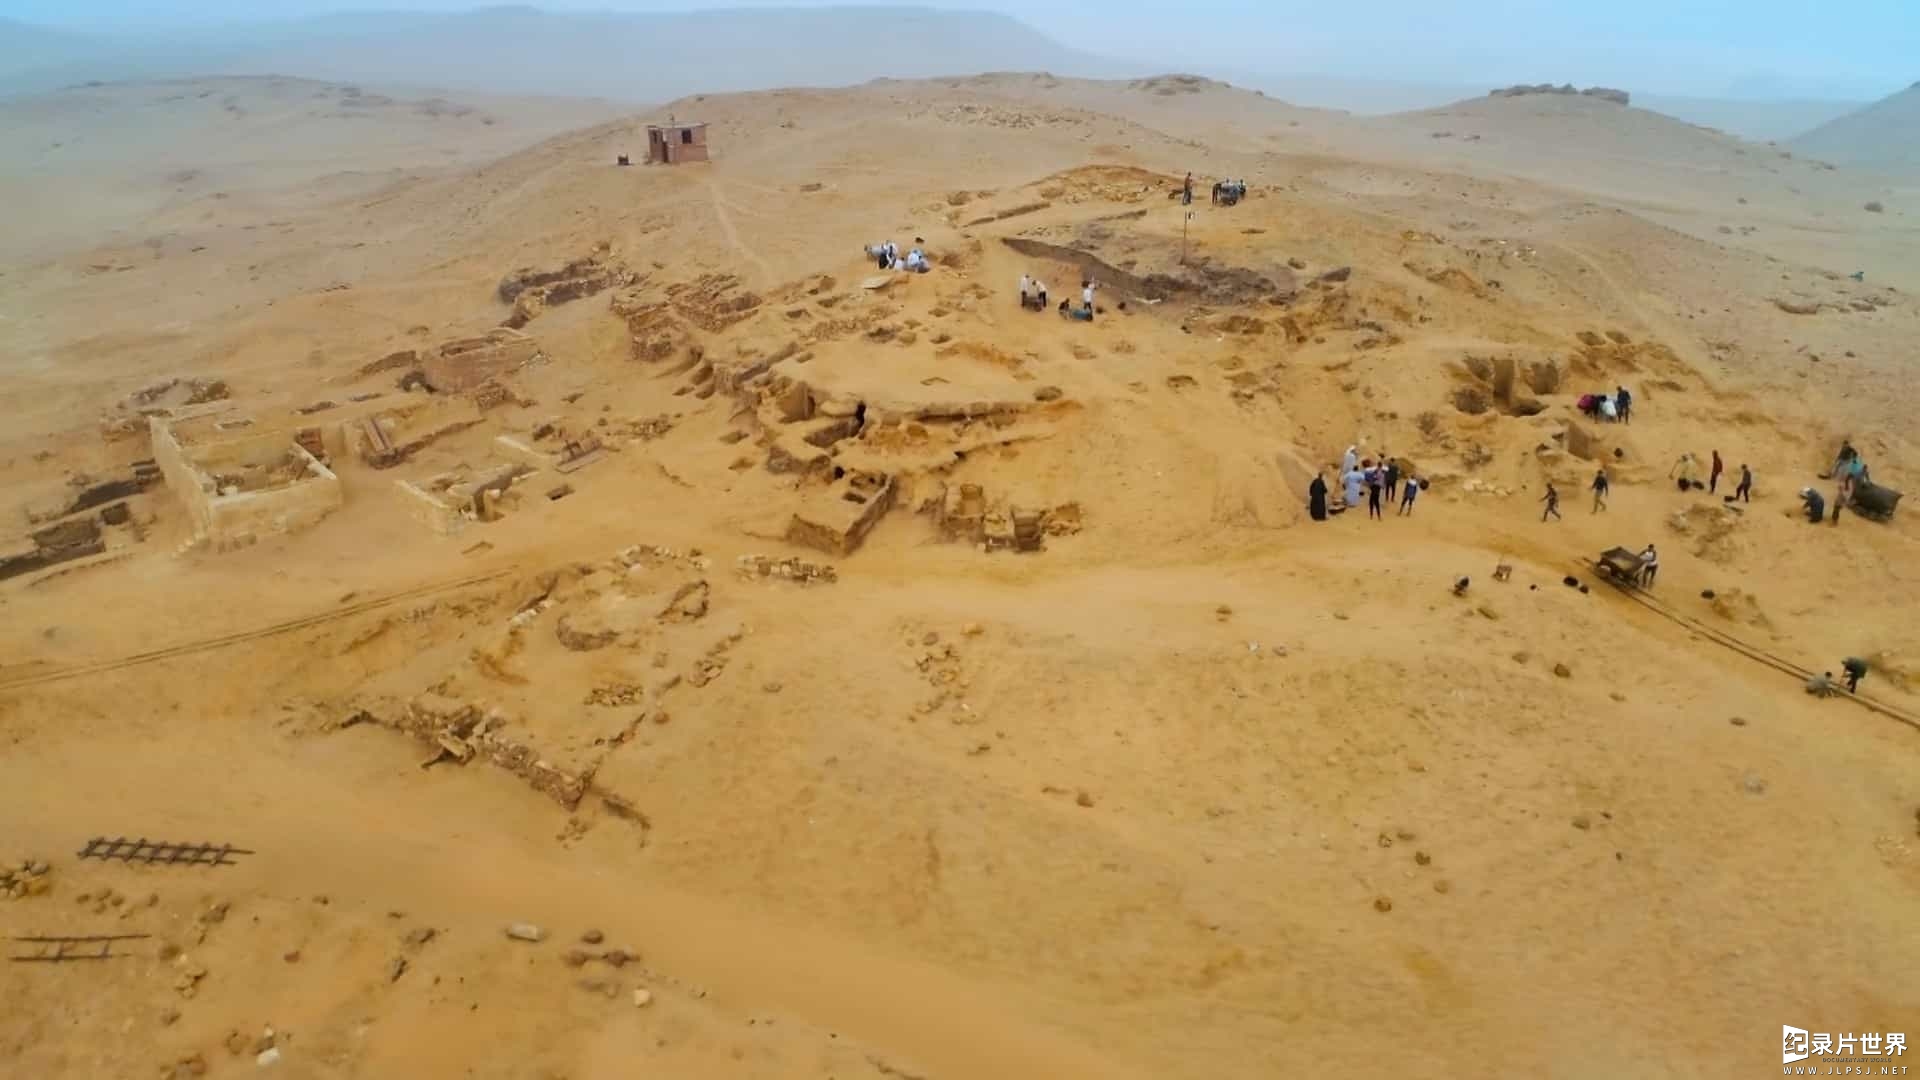 国家地理《失落的金字塔陵墓 Lost Tombs of the Pyramids 2020》全1集 